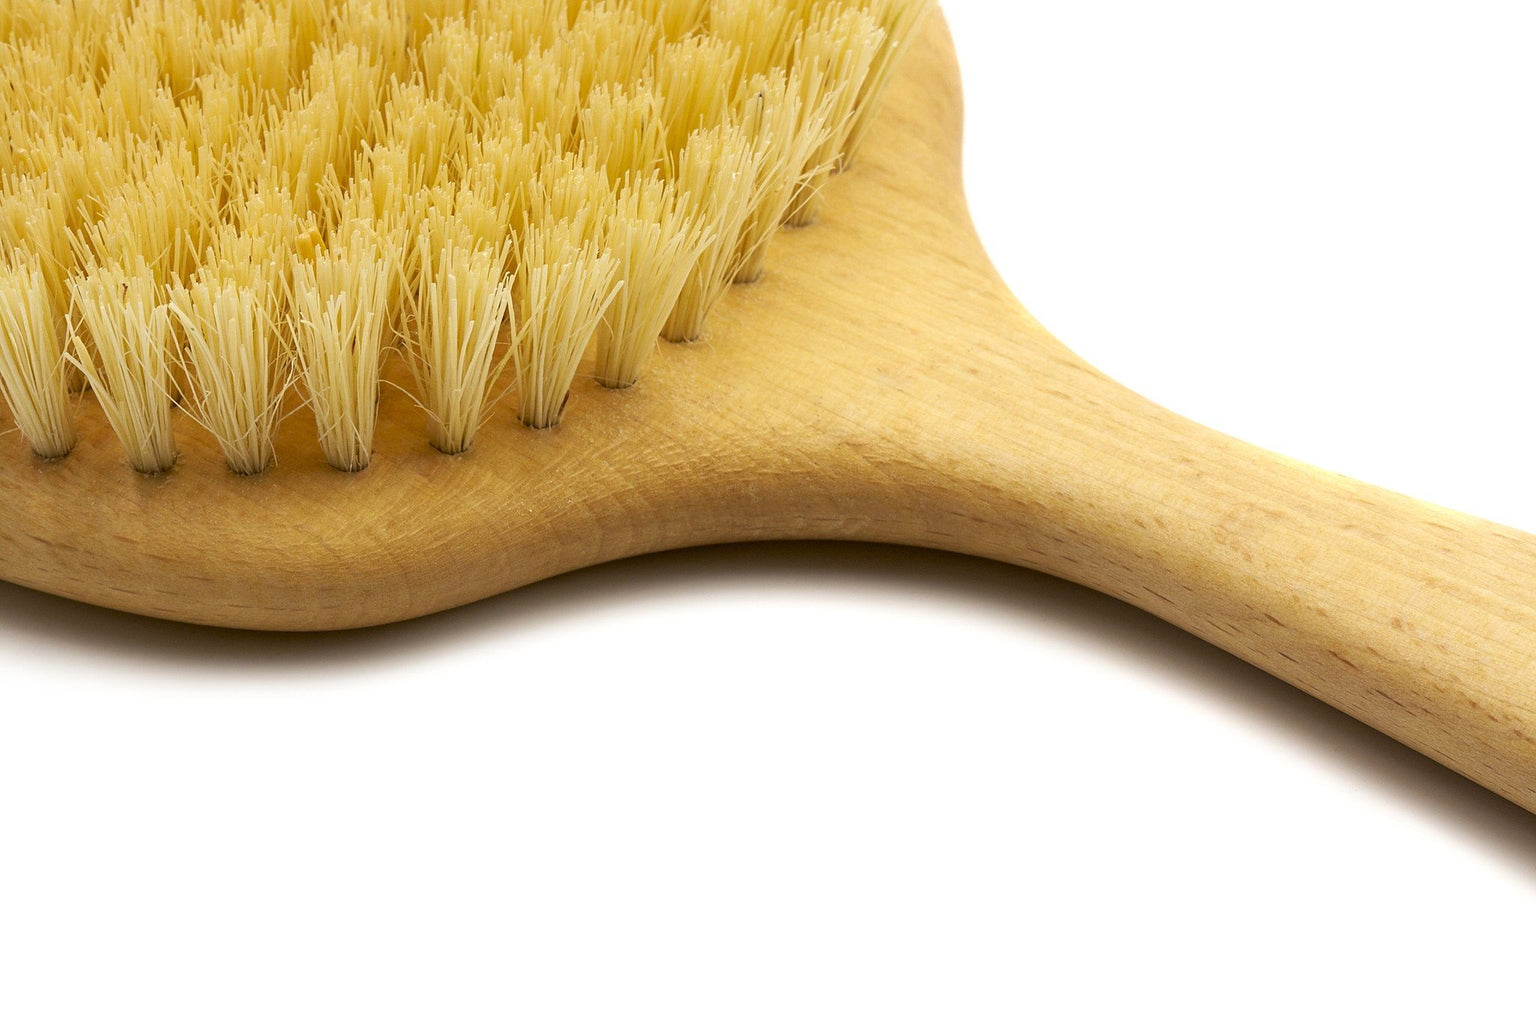 Natural Bristle Tampico and Horsehair Brush